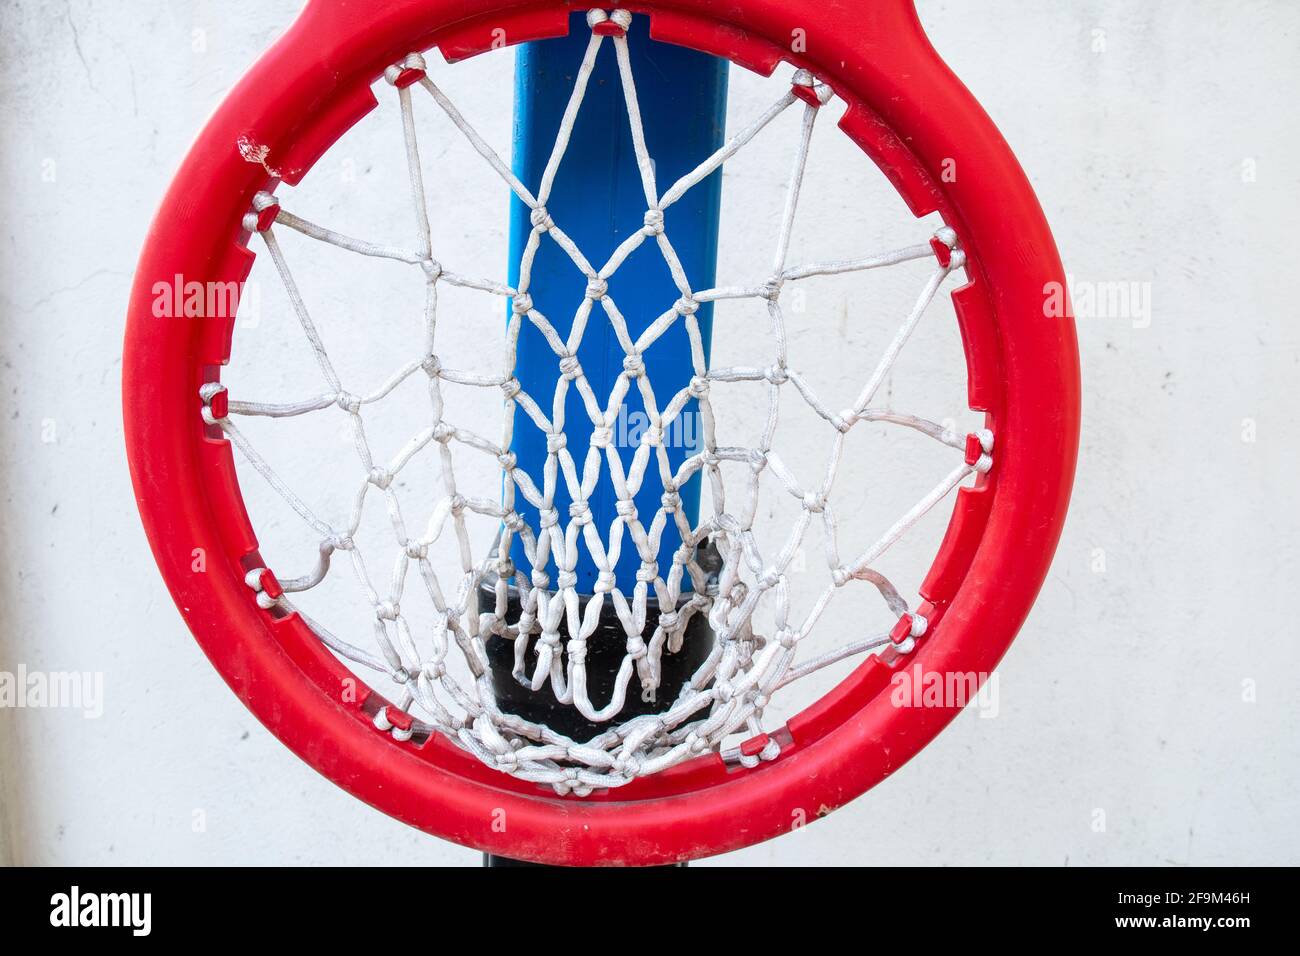 Ein dicker roter Kunststoffring mit weißem Netz, der an einem schwarzen Backboard auf einem Basketballplatz für Kinder befestigt ist. Gedreht in Barbados, Karibik. Heruntergeklappt. Stockfoto